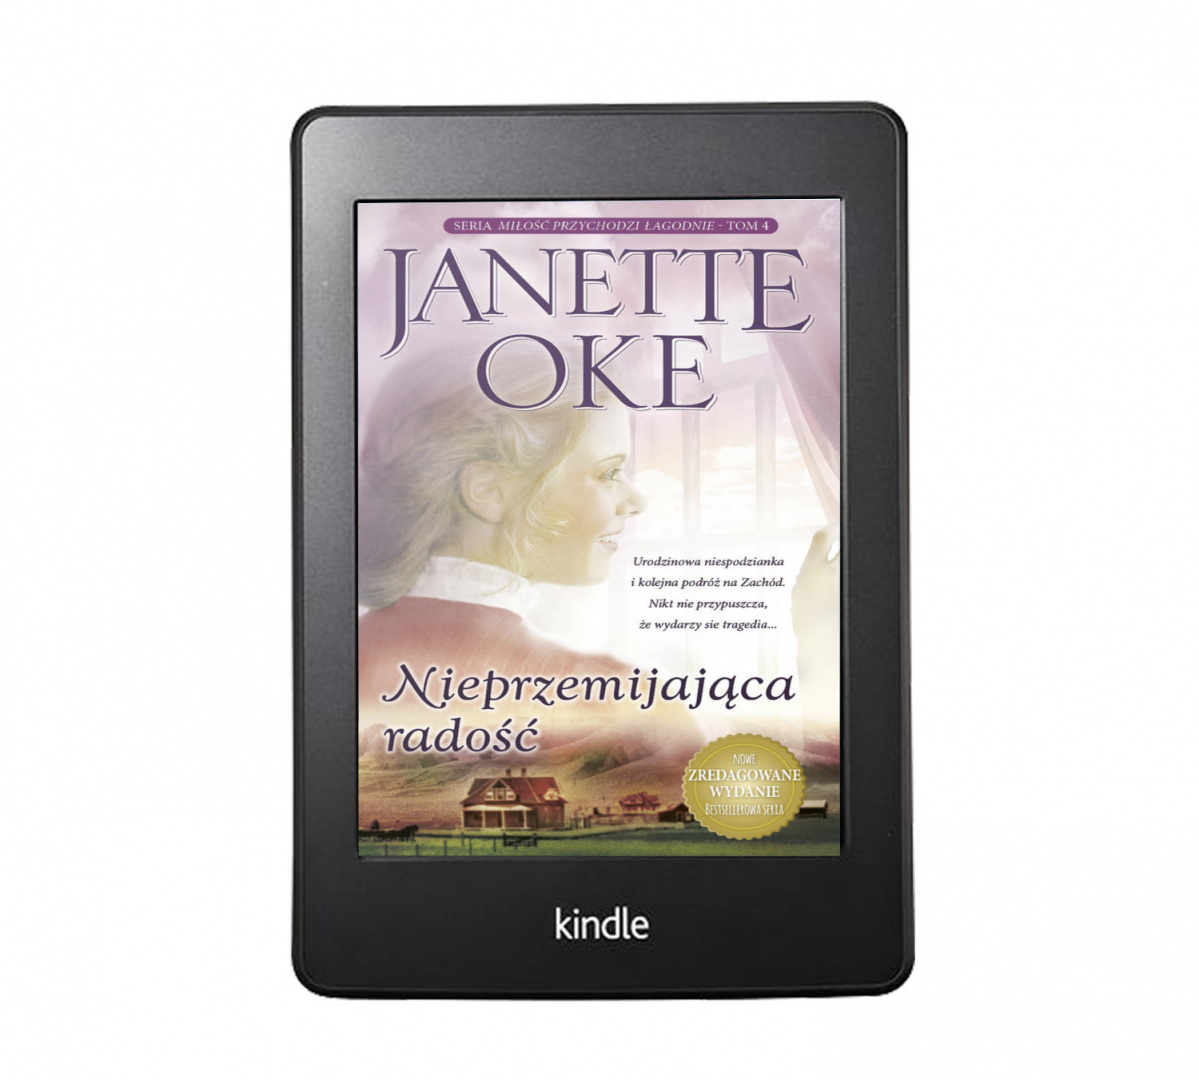 Ebook: NIEPRZEMIJAJĄCA RADOŚĆ - Janette Oke - NOWE WYDANIE [MOBI/EPUB]